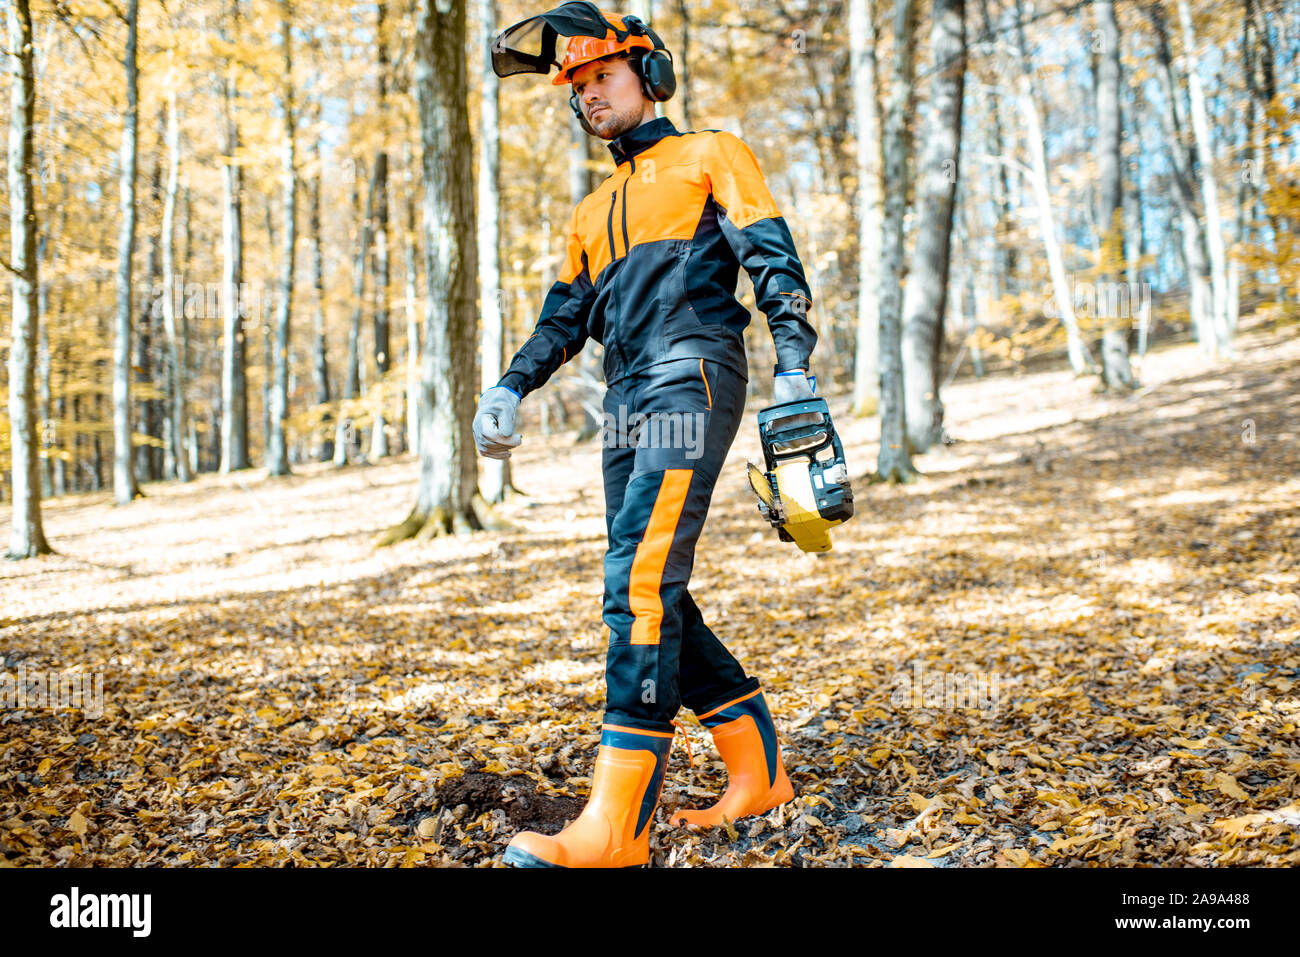 Ritratto di uno stile di vita di un professionista lumberjack in indumenti da lavoro protettiva a piedi con una motosega nel bosco Foto Stock